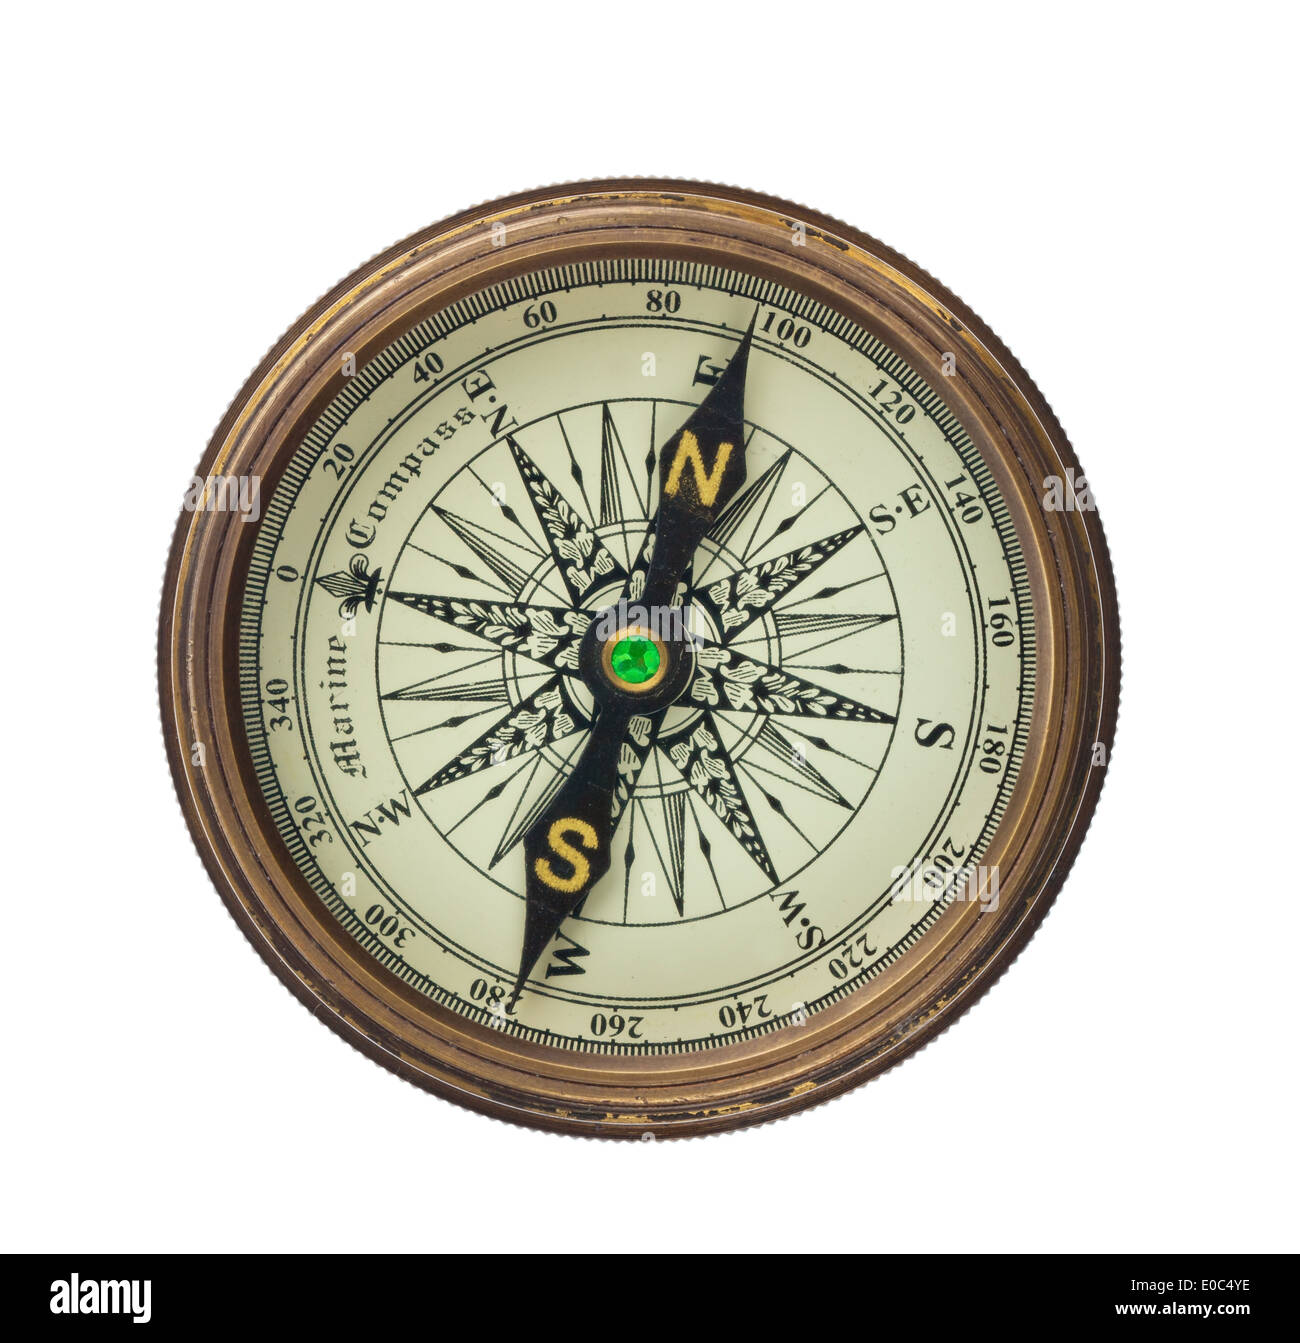 A compass lies on a white background., Ein Kompass liegt auf einem weissem  Hintergrund Stock Photo - Alamy